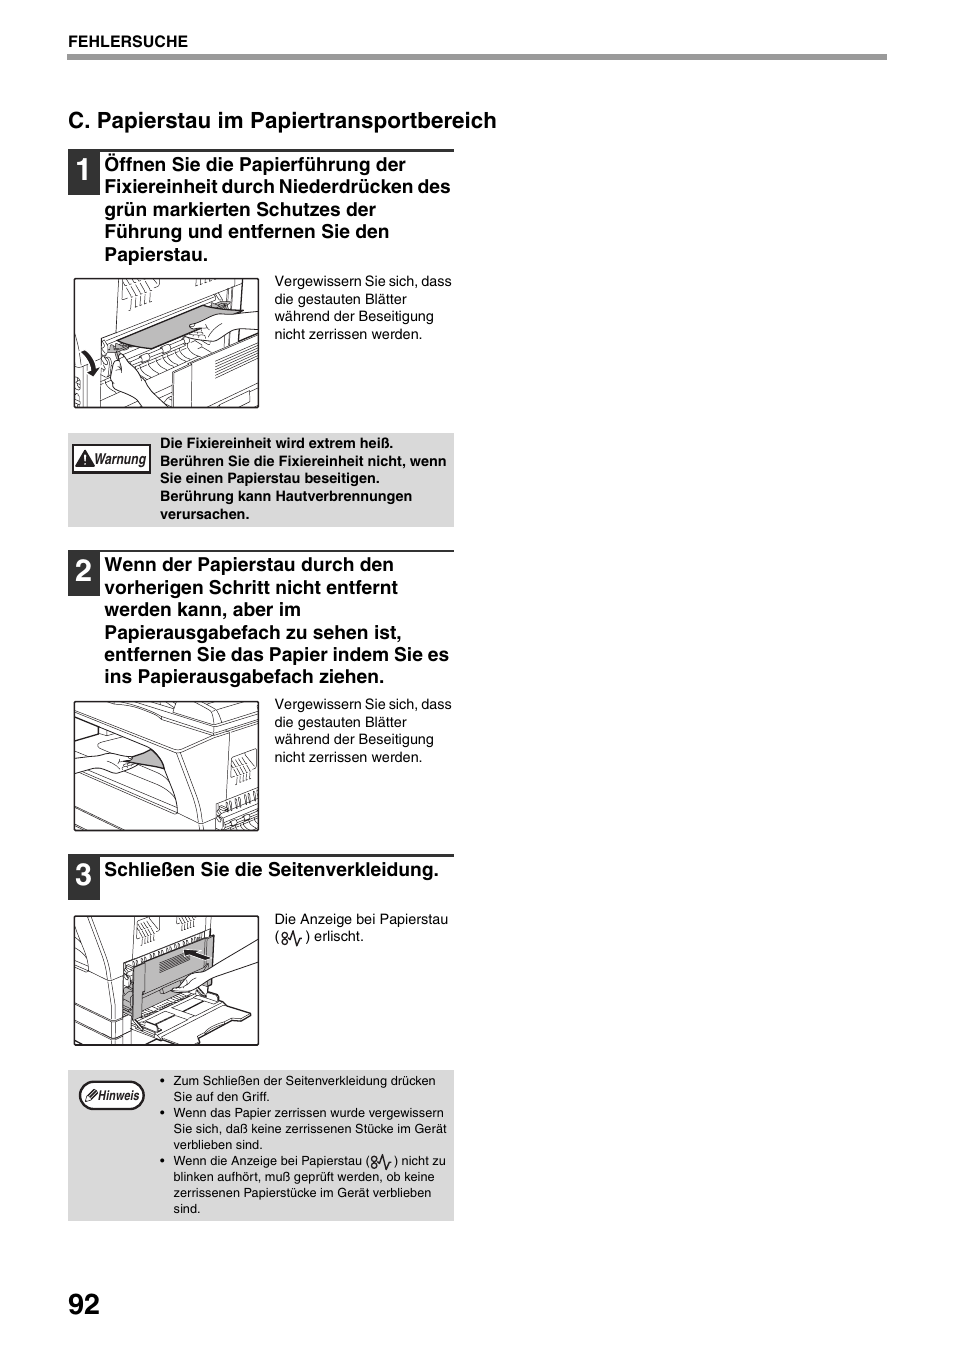 Au öffnen, S.92), C. papierstau im papiertransportbereich | Sharp AR-5618 Benutzerhandbuch | Seite 94 / 108